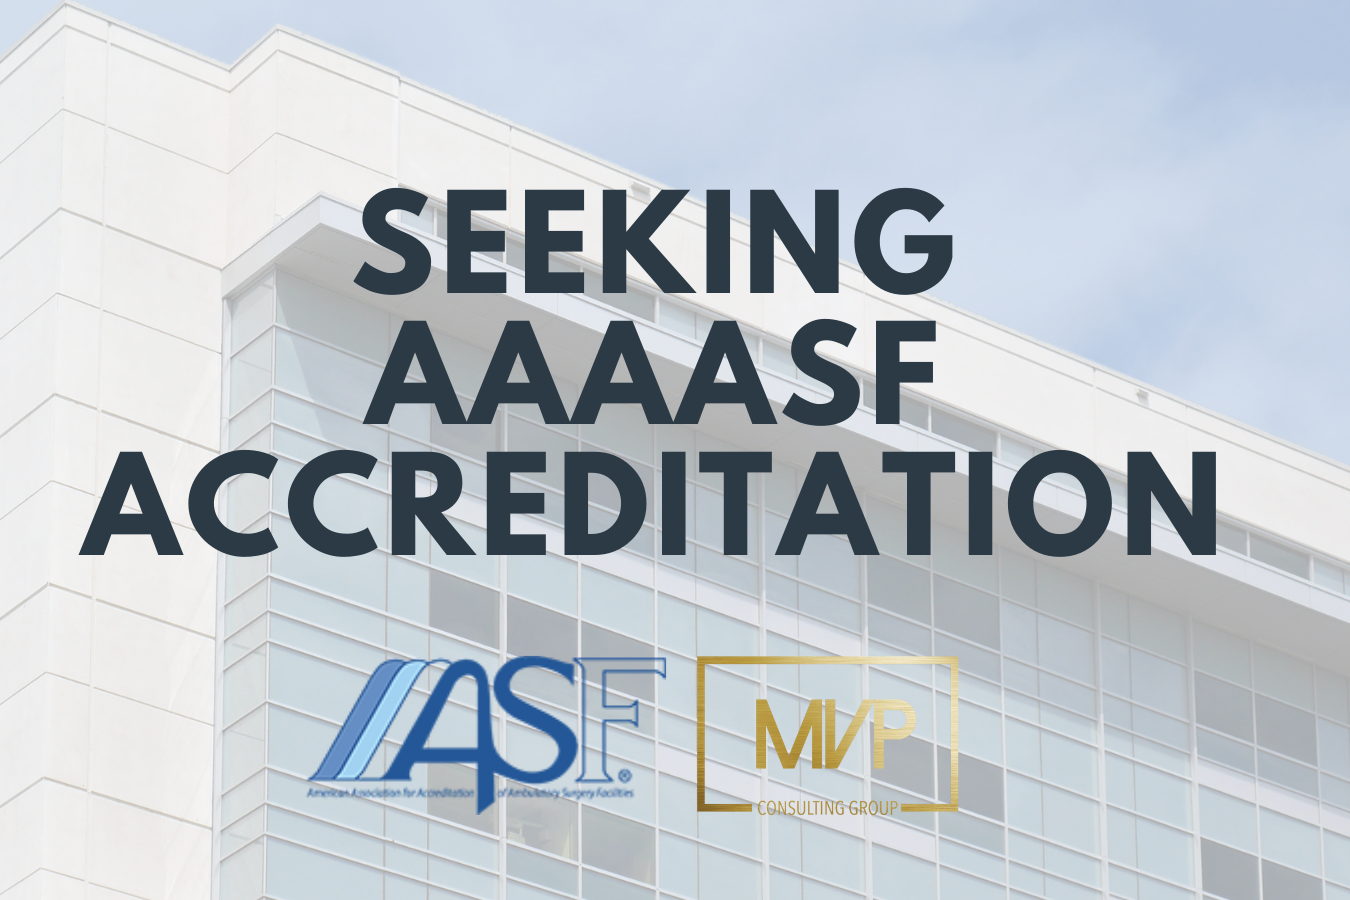 AAAASF accreditation